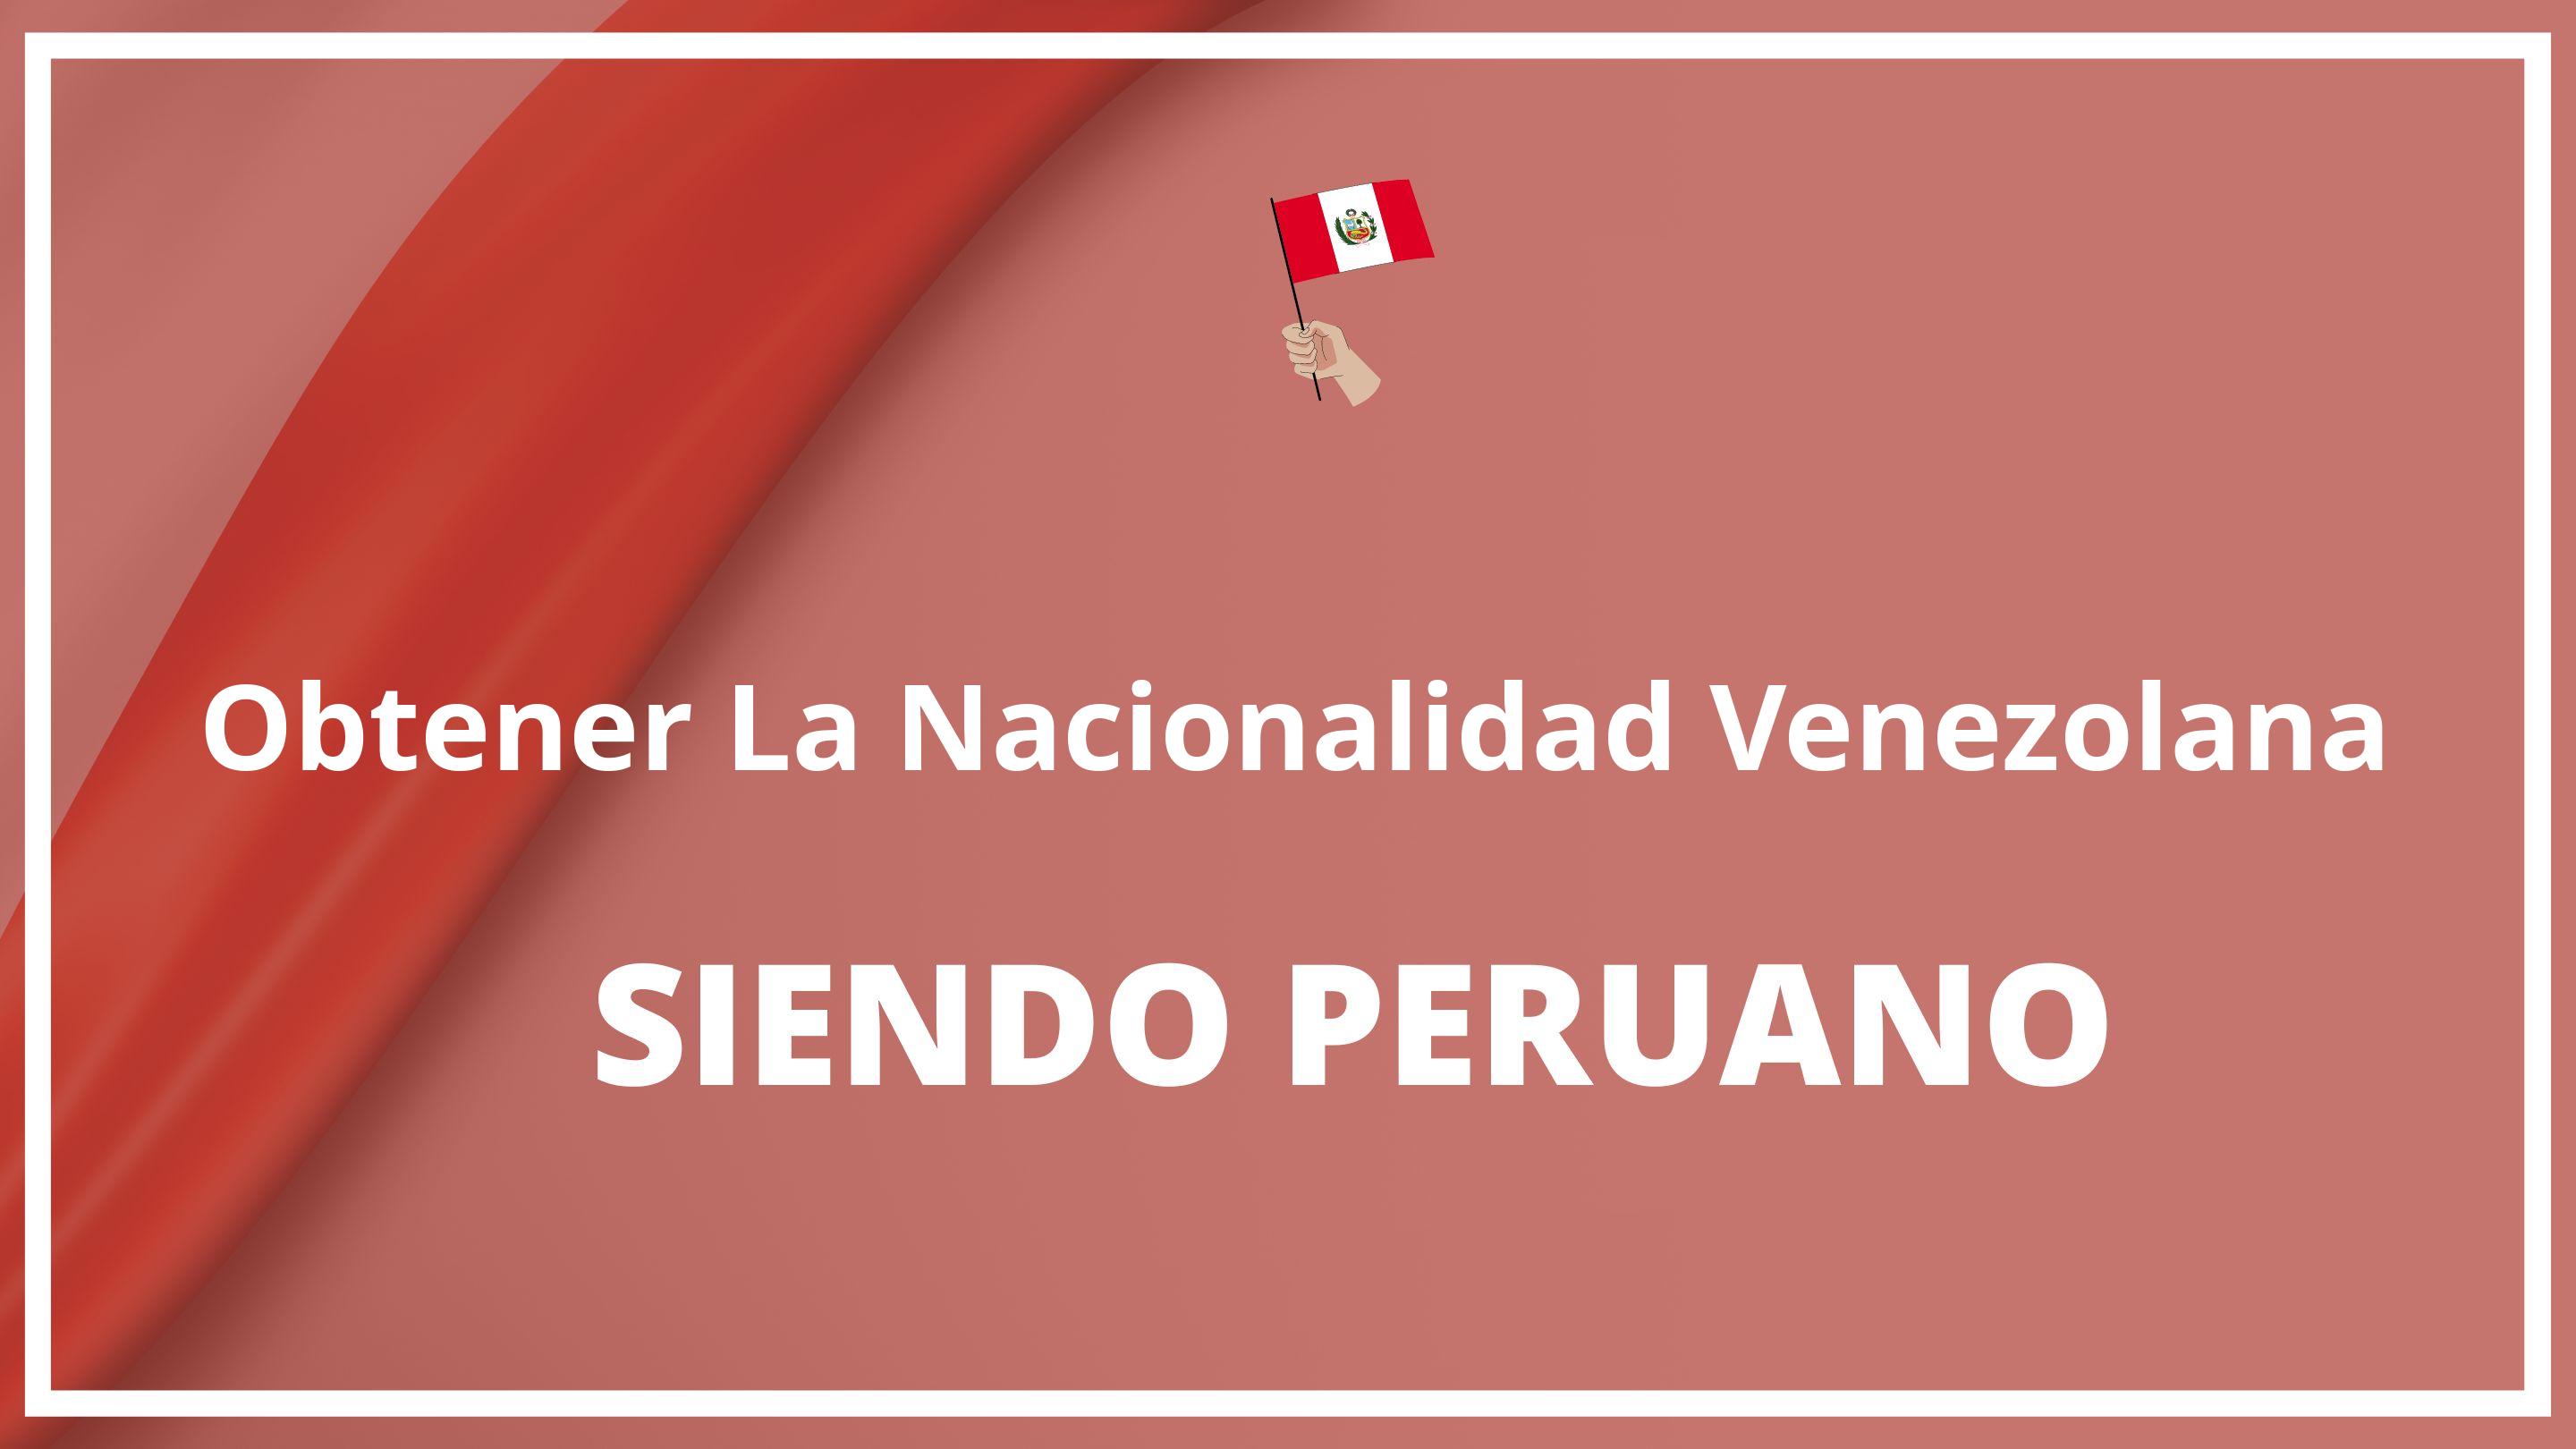 Como obtener la nacionalidad venezolana siendo peruano